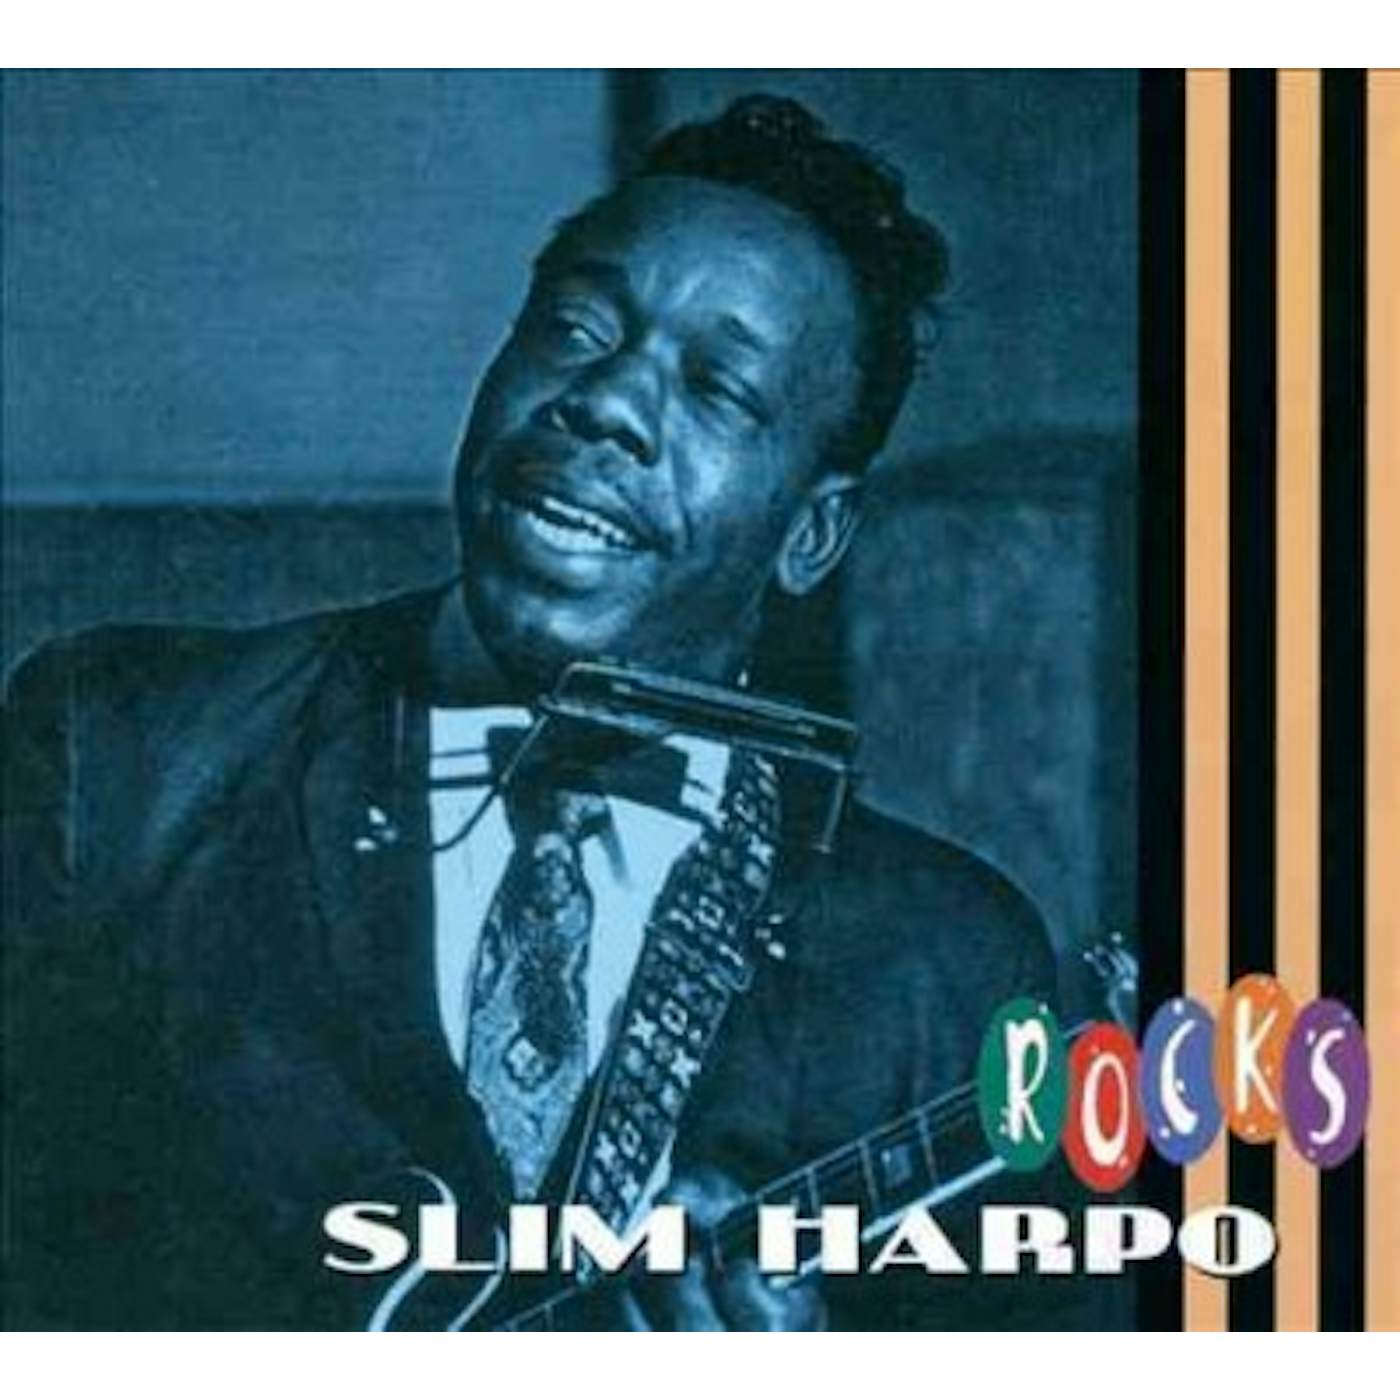 Slim Harpo Rocks CD